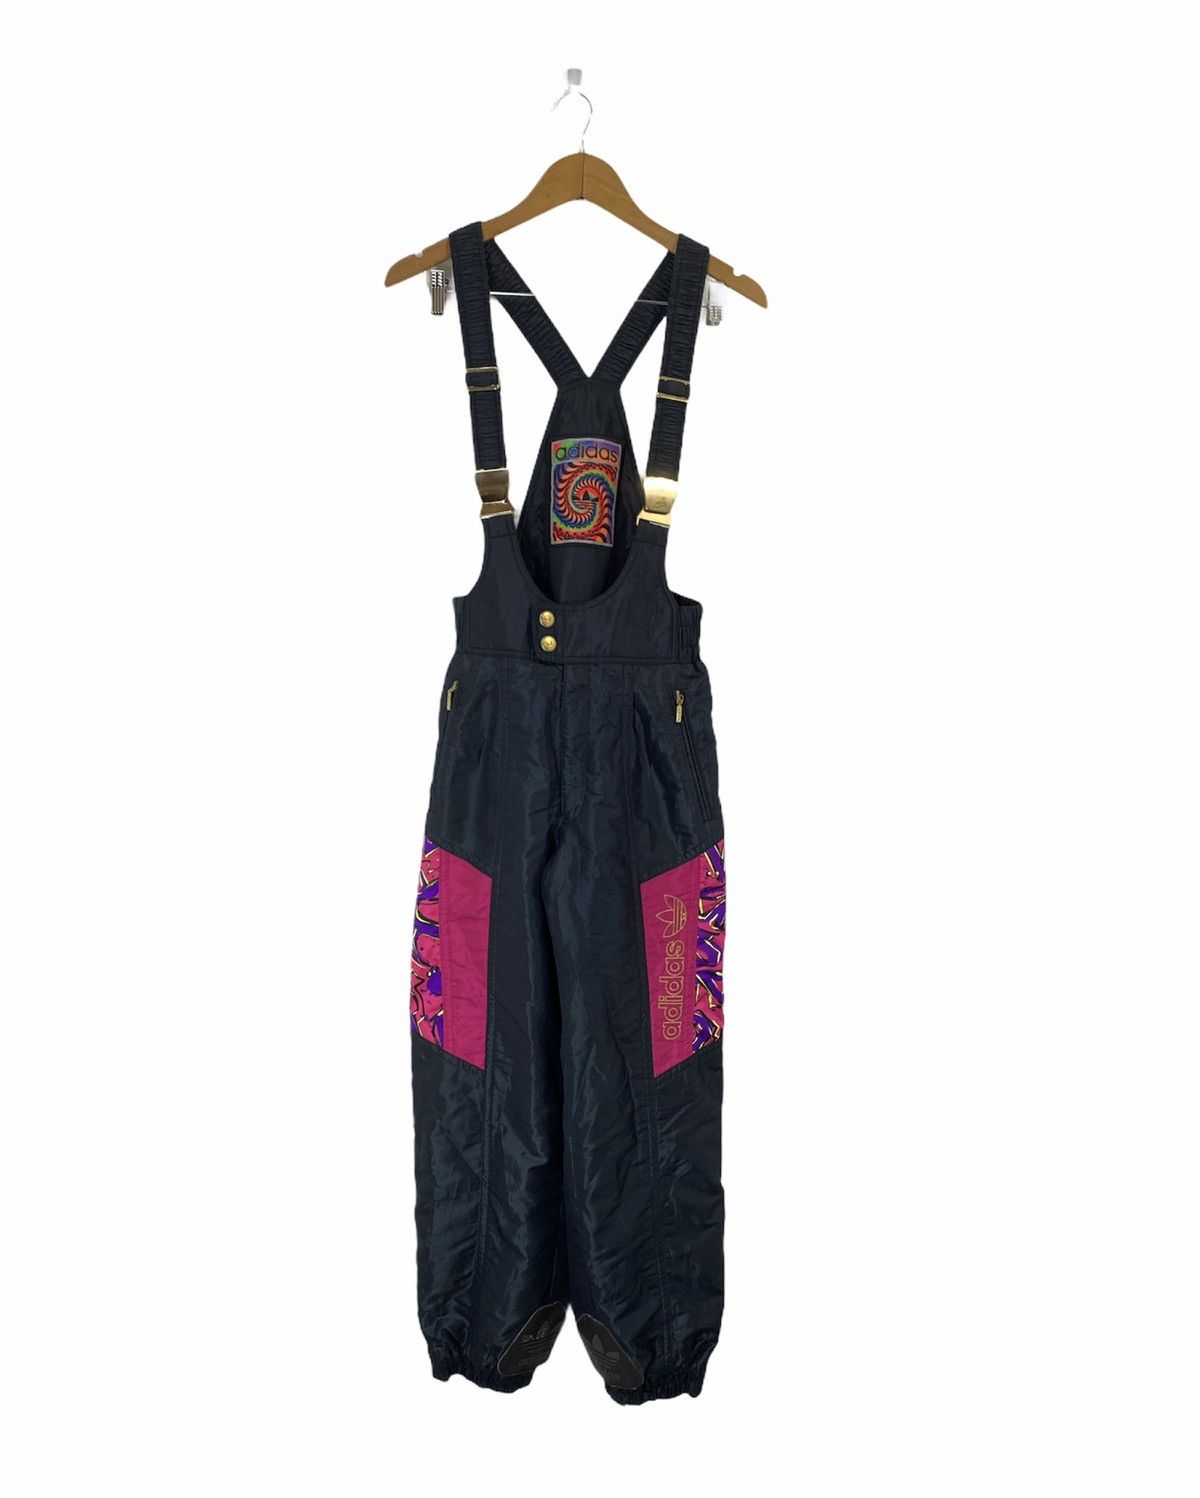 Vintage 90’s Adidas Overall Ski Pant Nice Design - 1